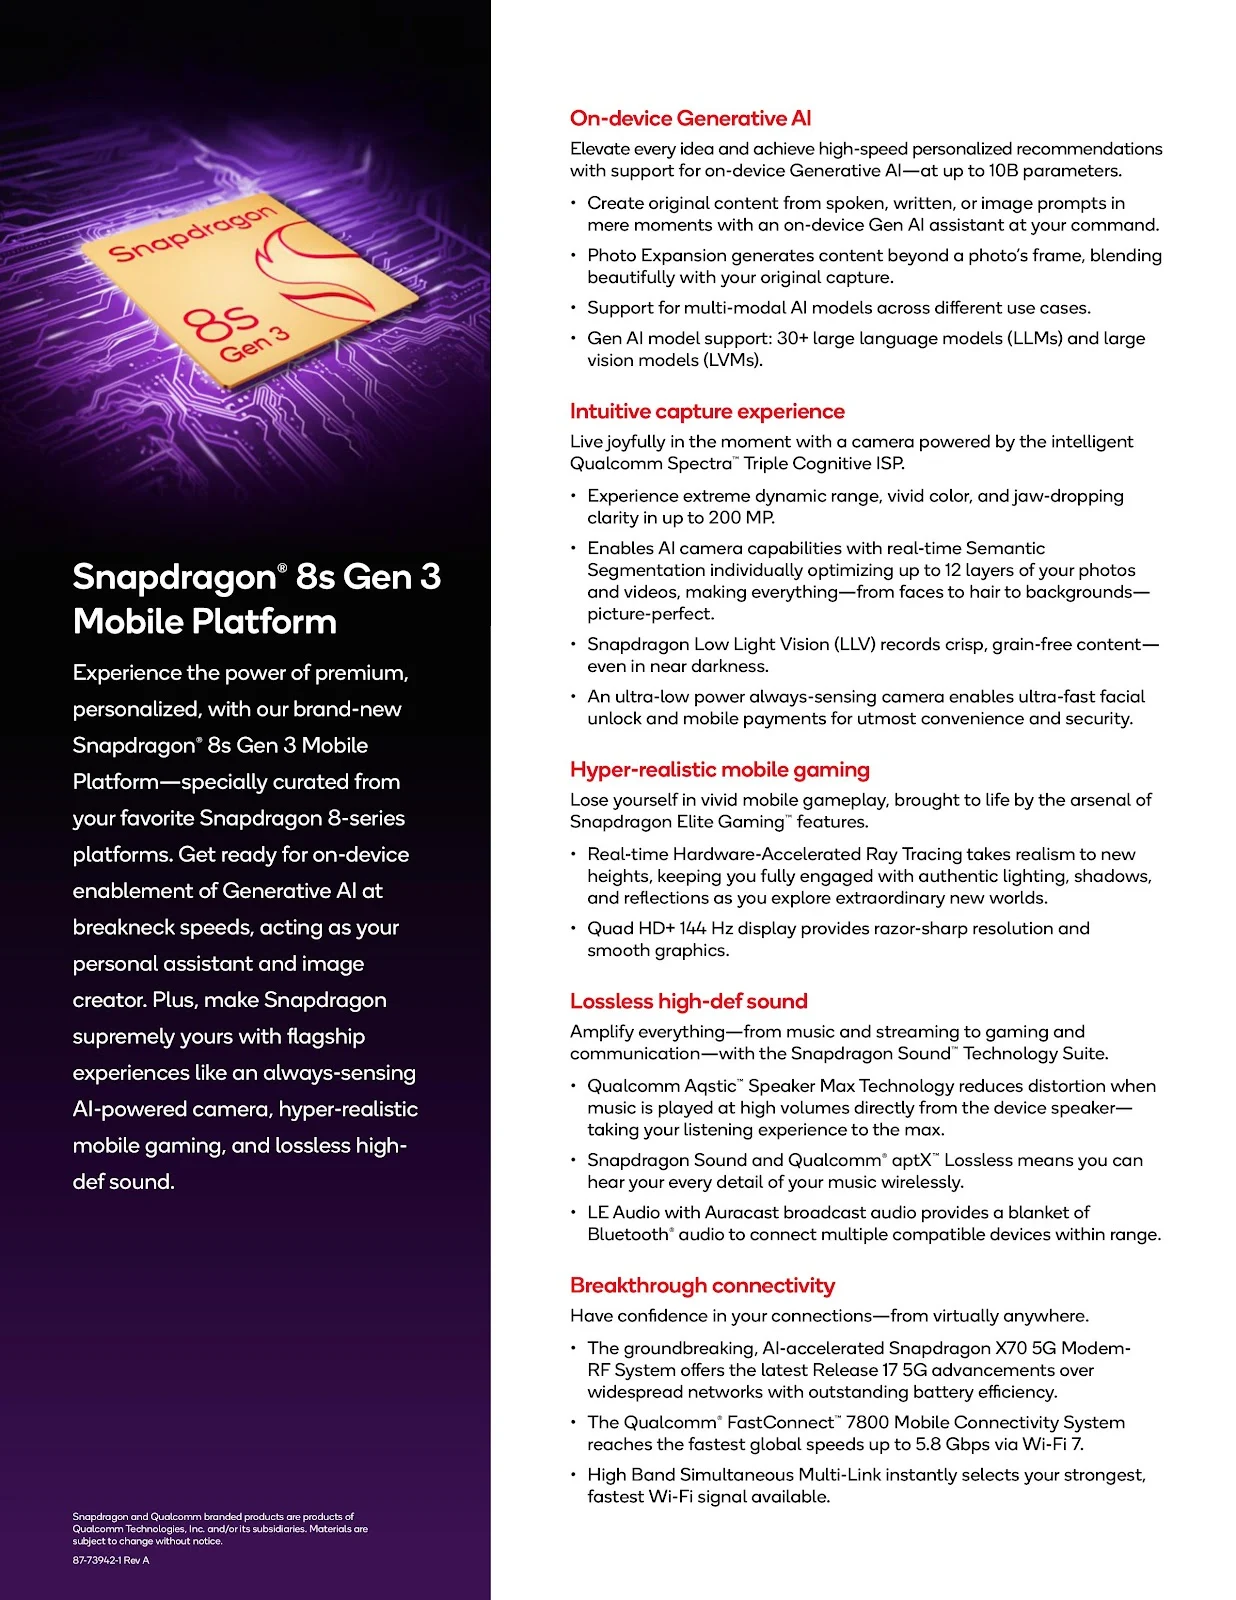 Snapdragon 8s Gen 3 features